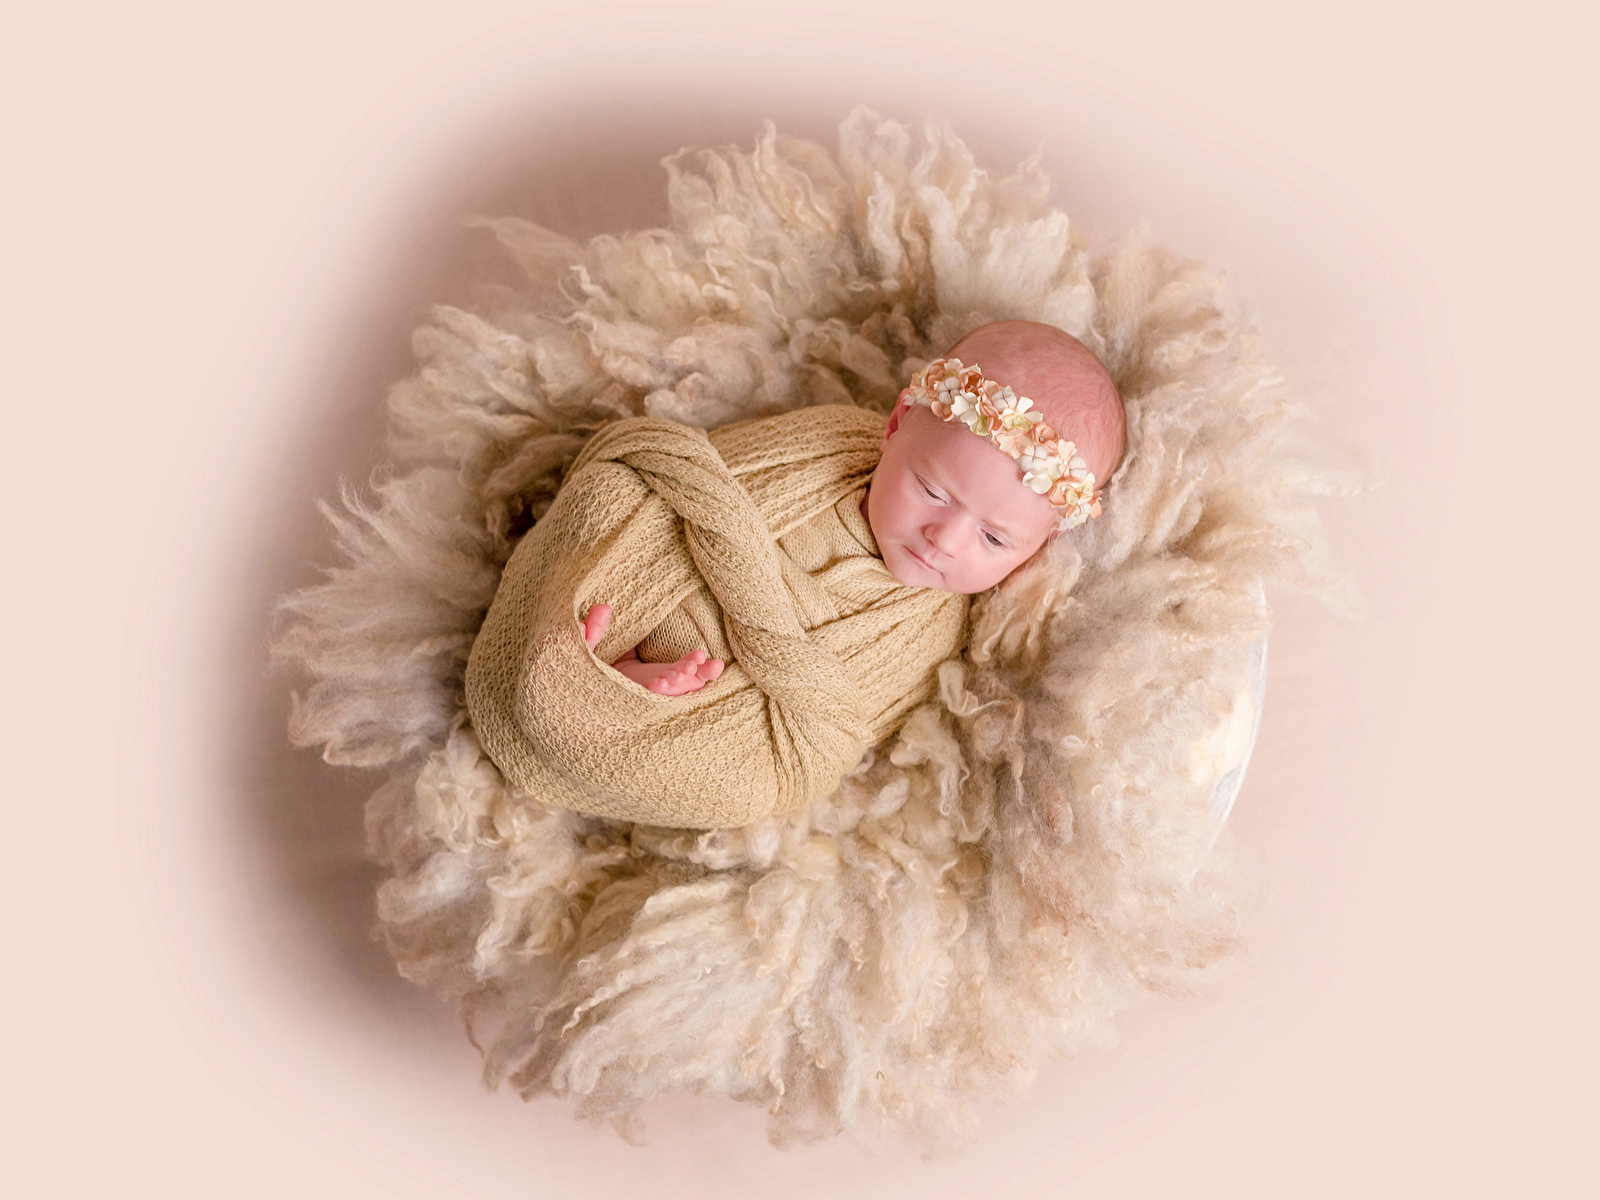 Фото грудной ребёнок Дети Цветной фон 1600x1200 Младенцы младенец младенца ребёнок